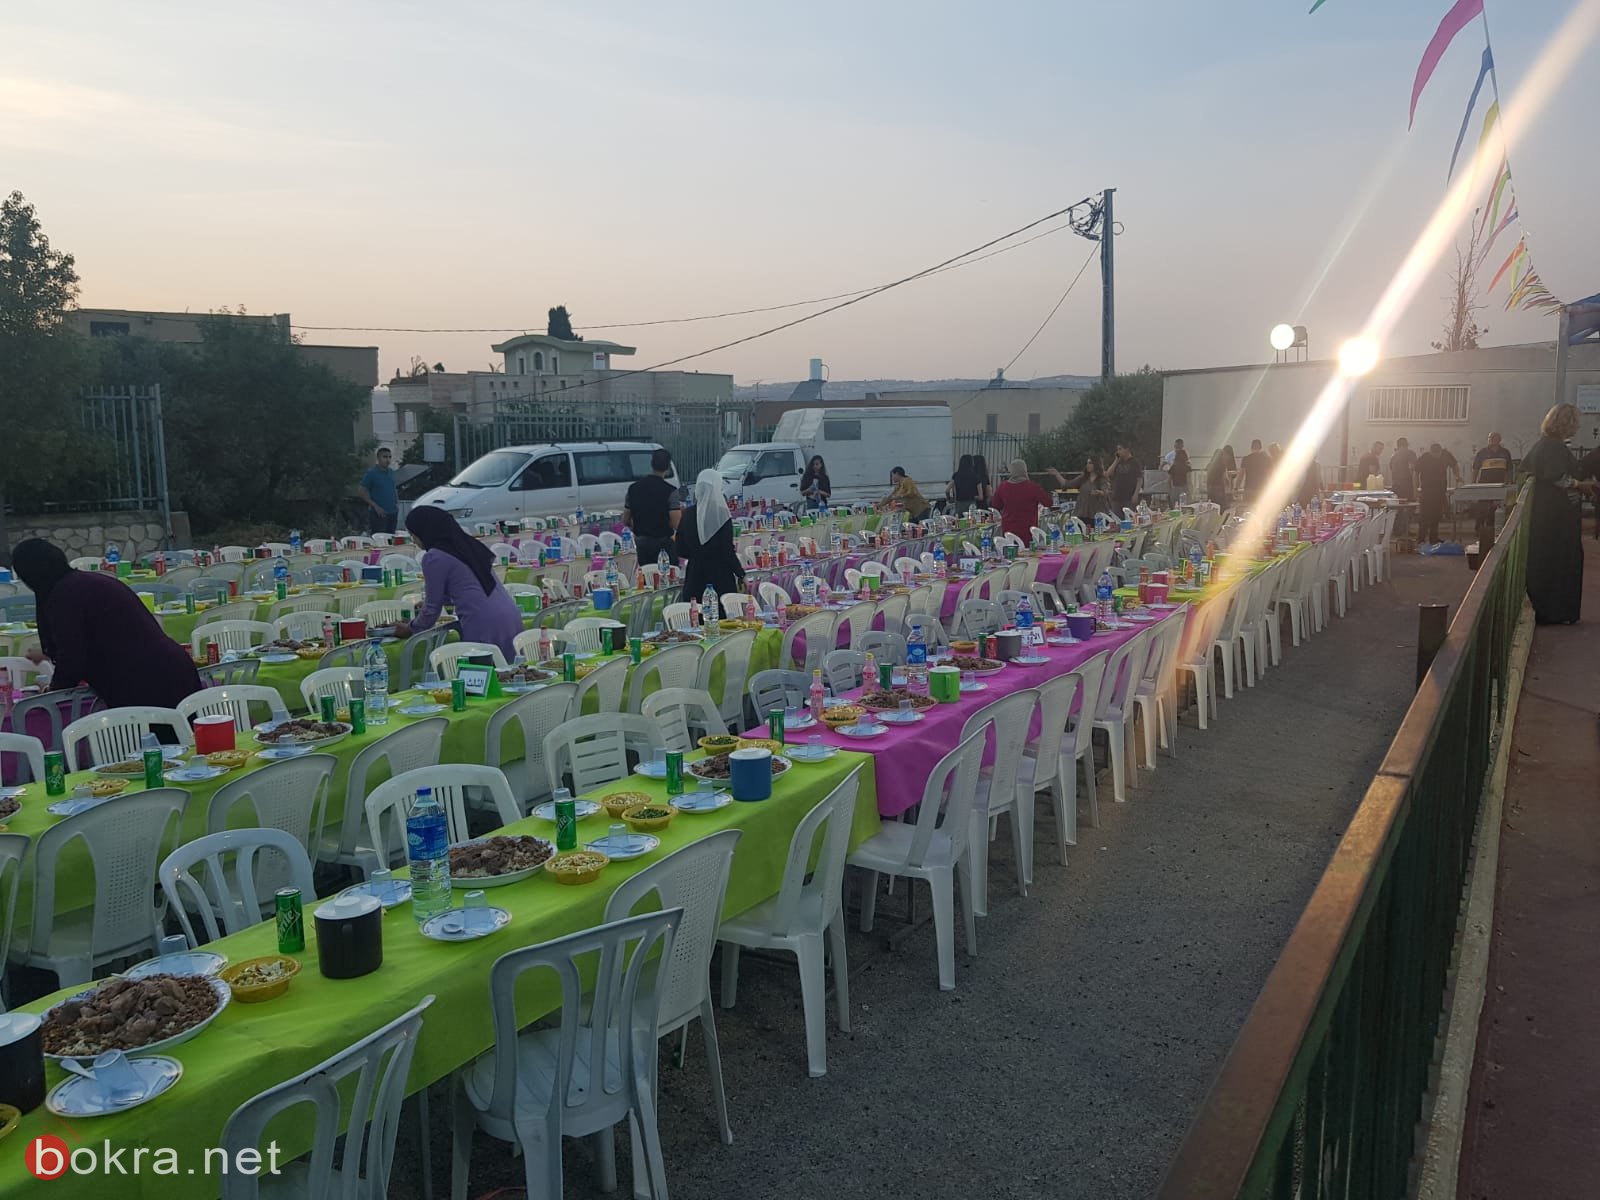 افطار جماعي وامسية رمضانية مهيبة في رحاب المدرسة الابتدائية نين-17